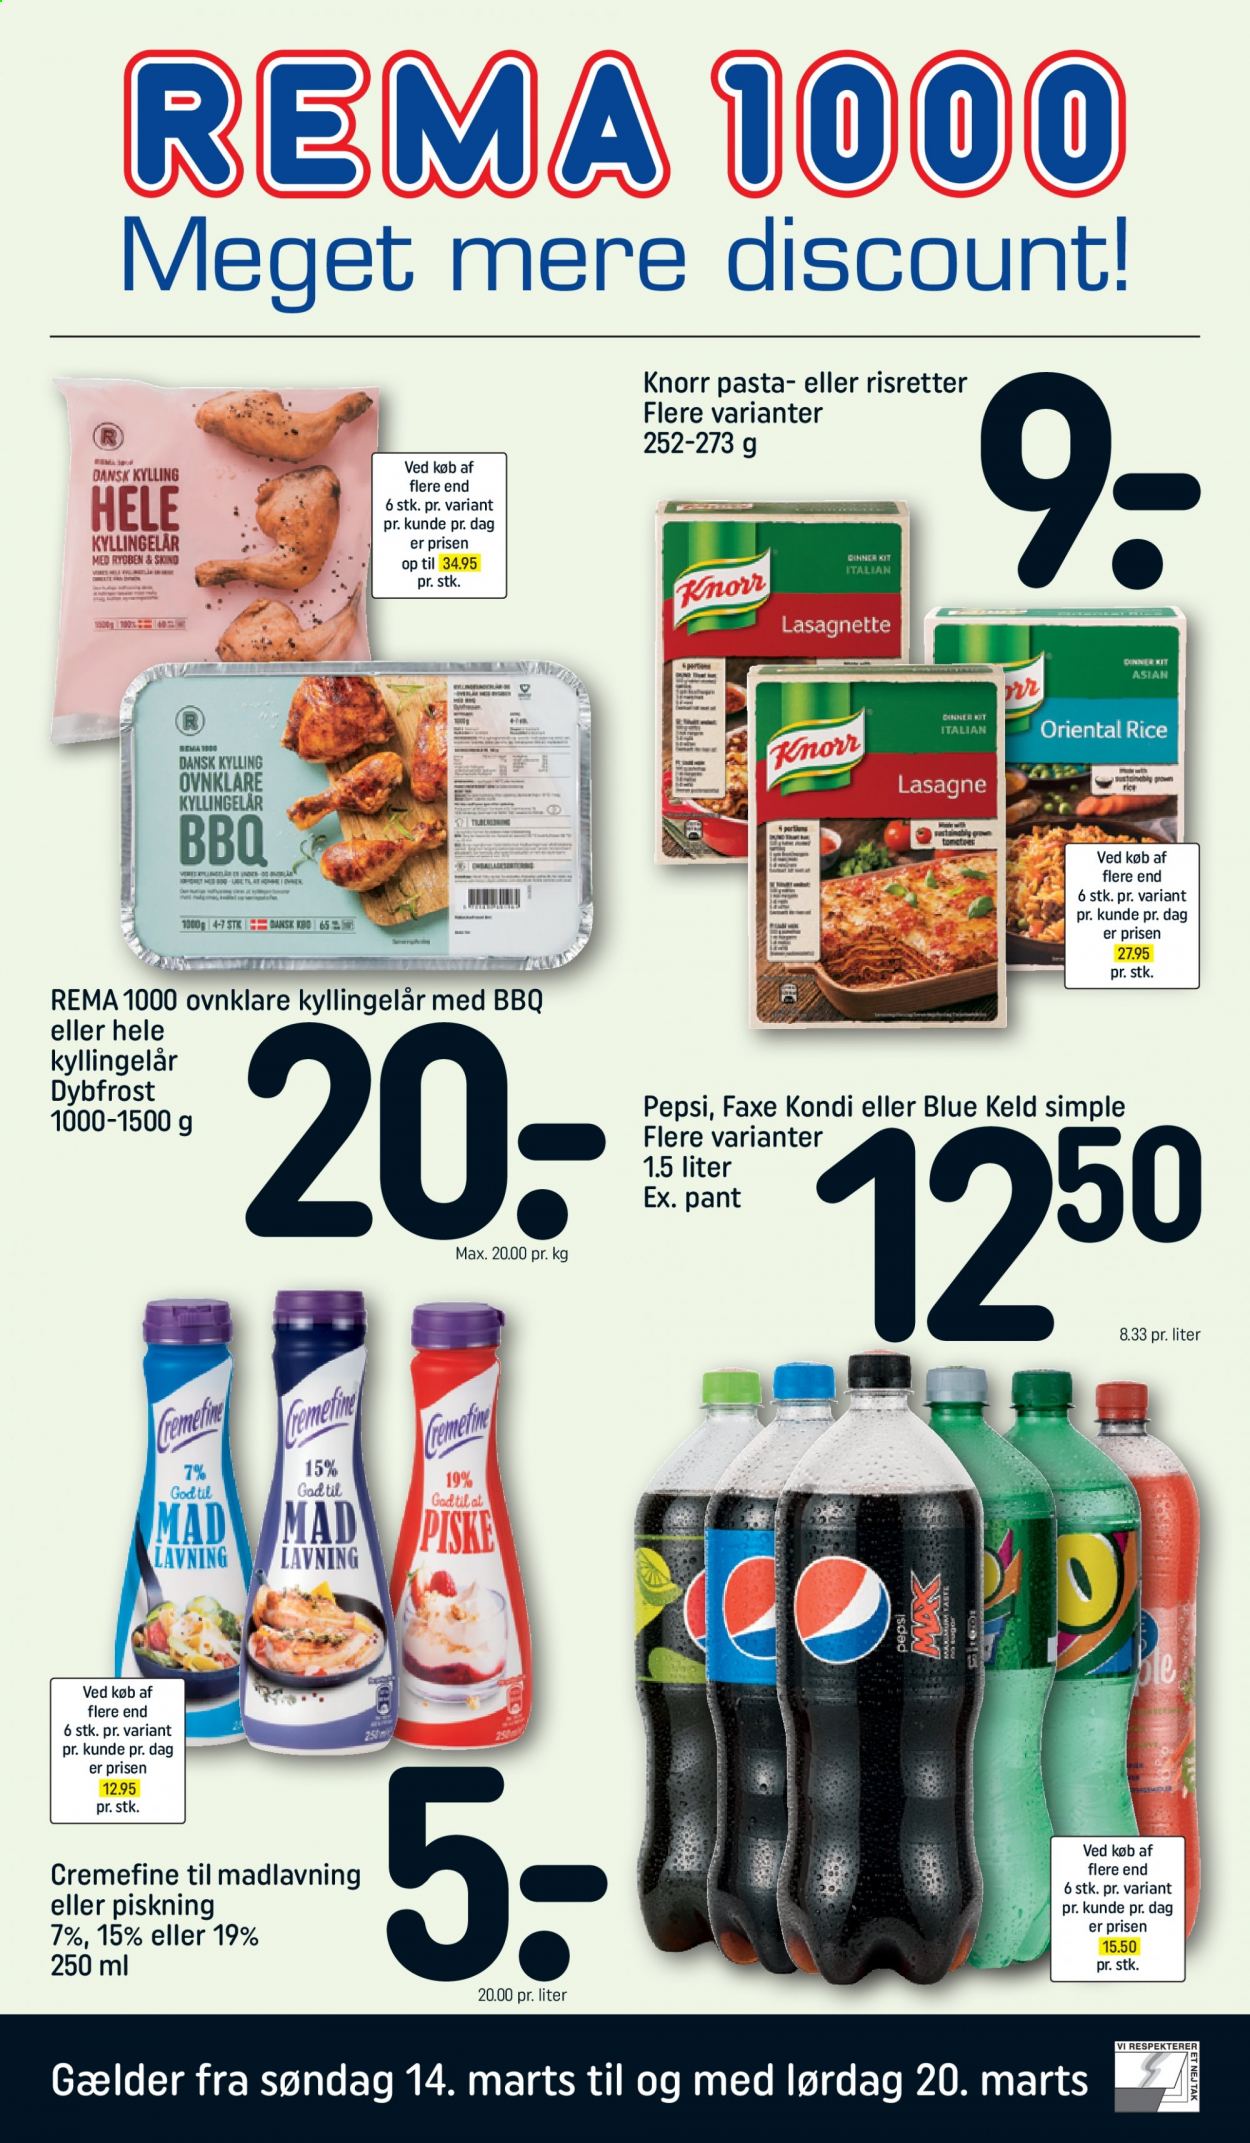 thumbnail - Rema 1000 tilbud  - 14.3.2021 - 20.3.2021 - tilbudsprodukter - kylling, kyllingelår, Knorr, lasagne, pasta, Pepsi. Side 1.